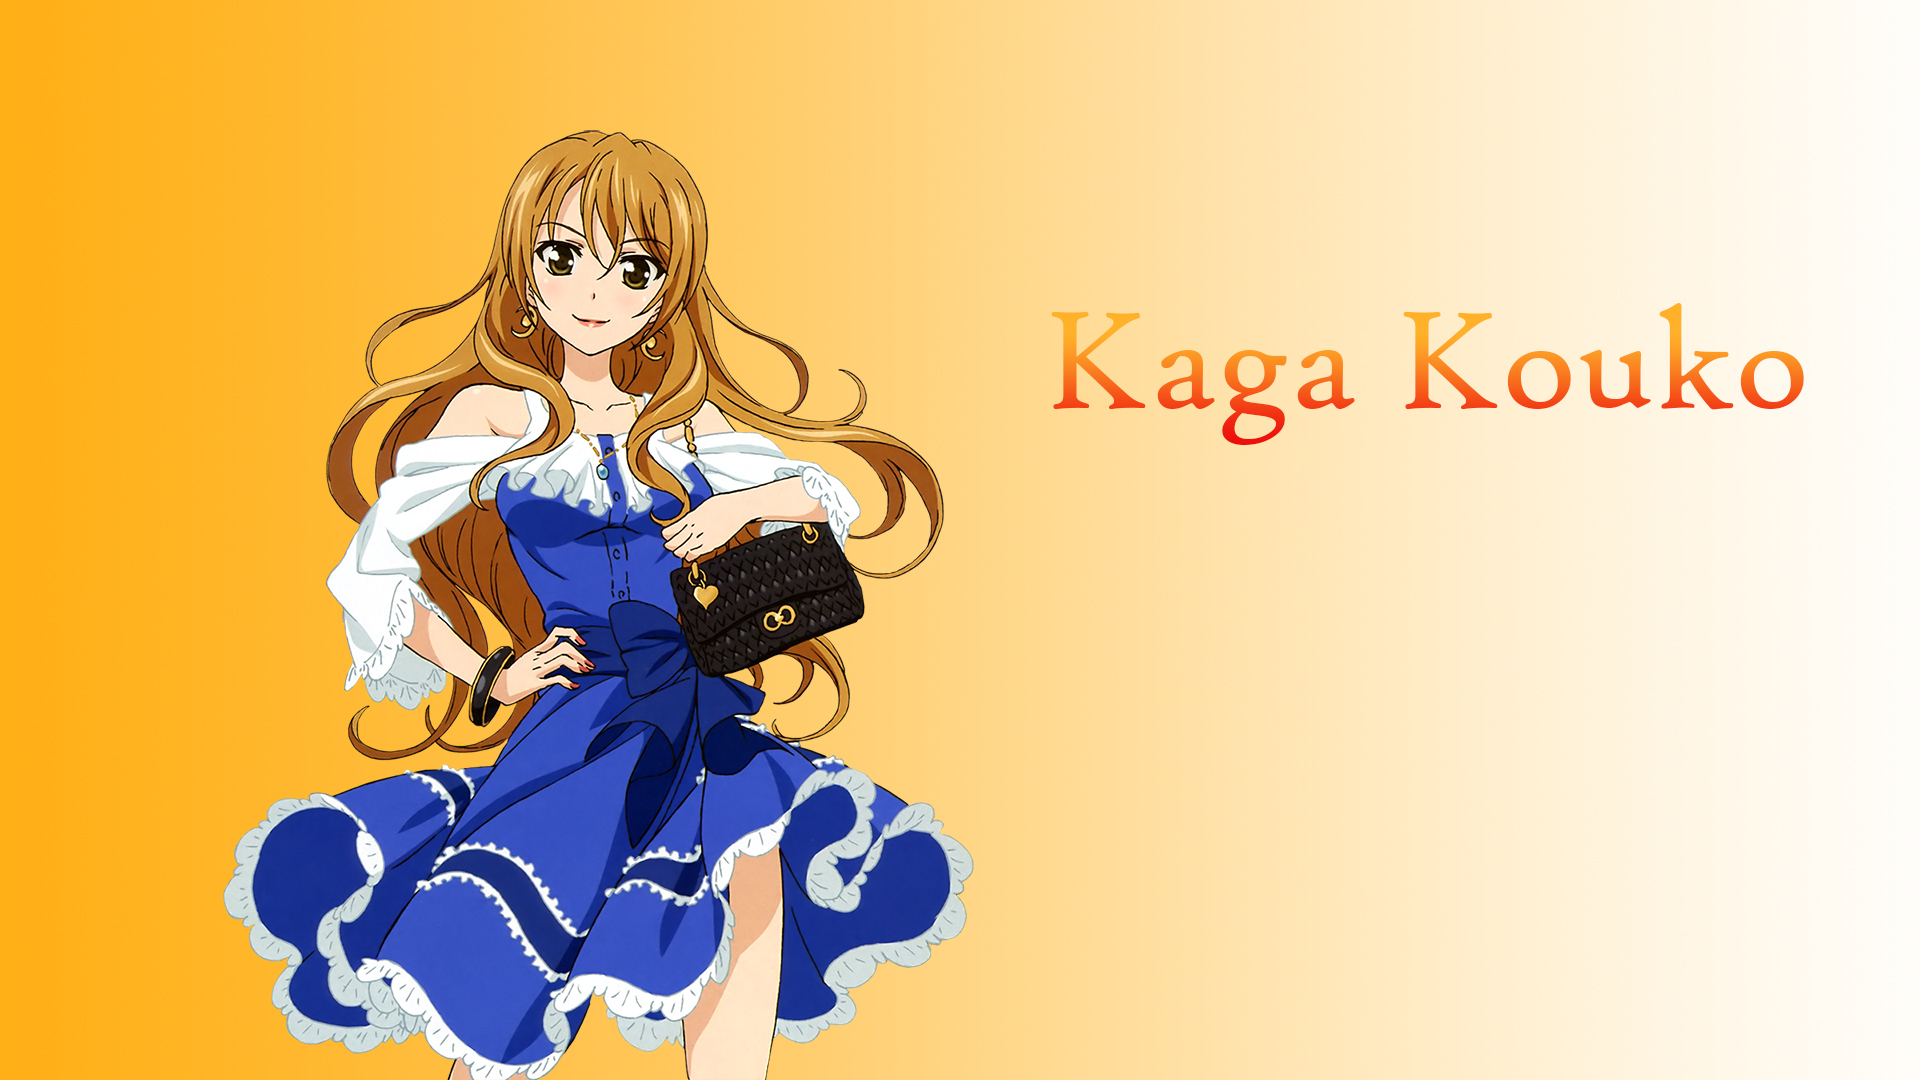 Kaga Kouko Golden Time Anime Anime Girls 1920x1080